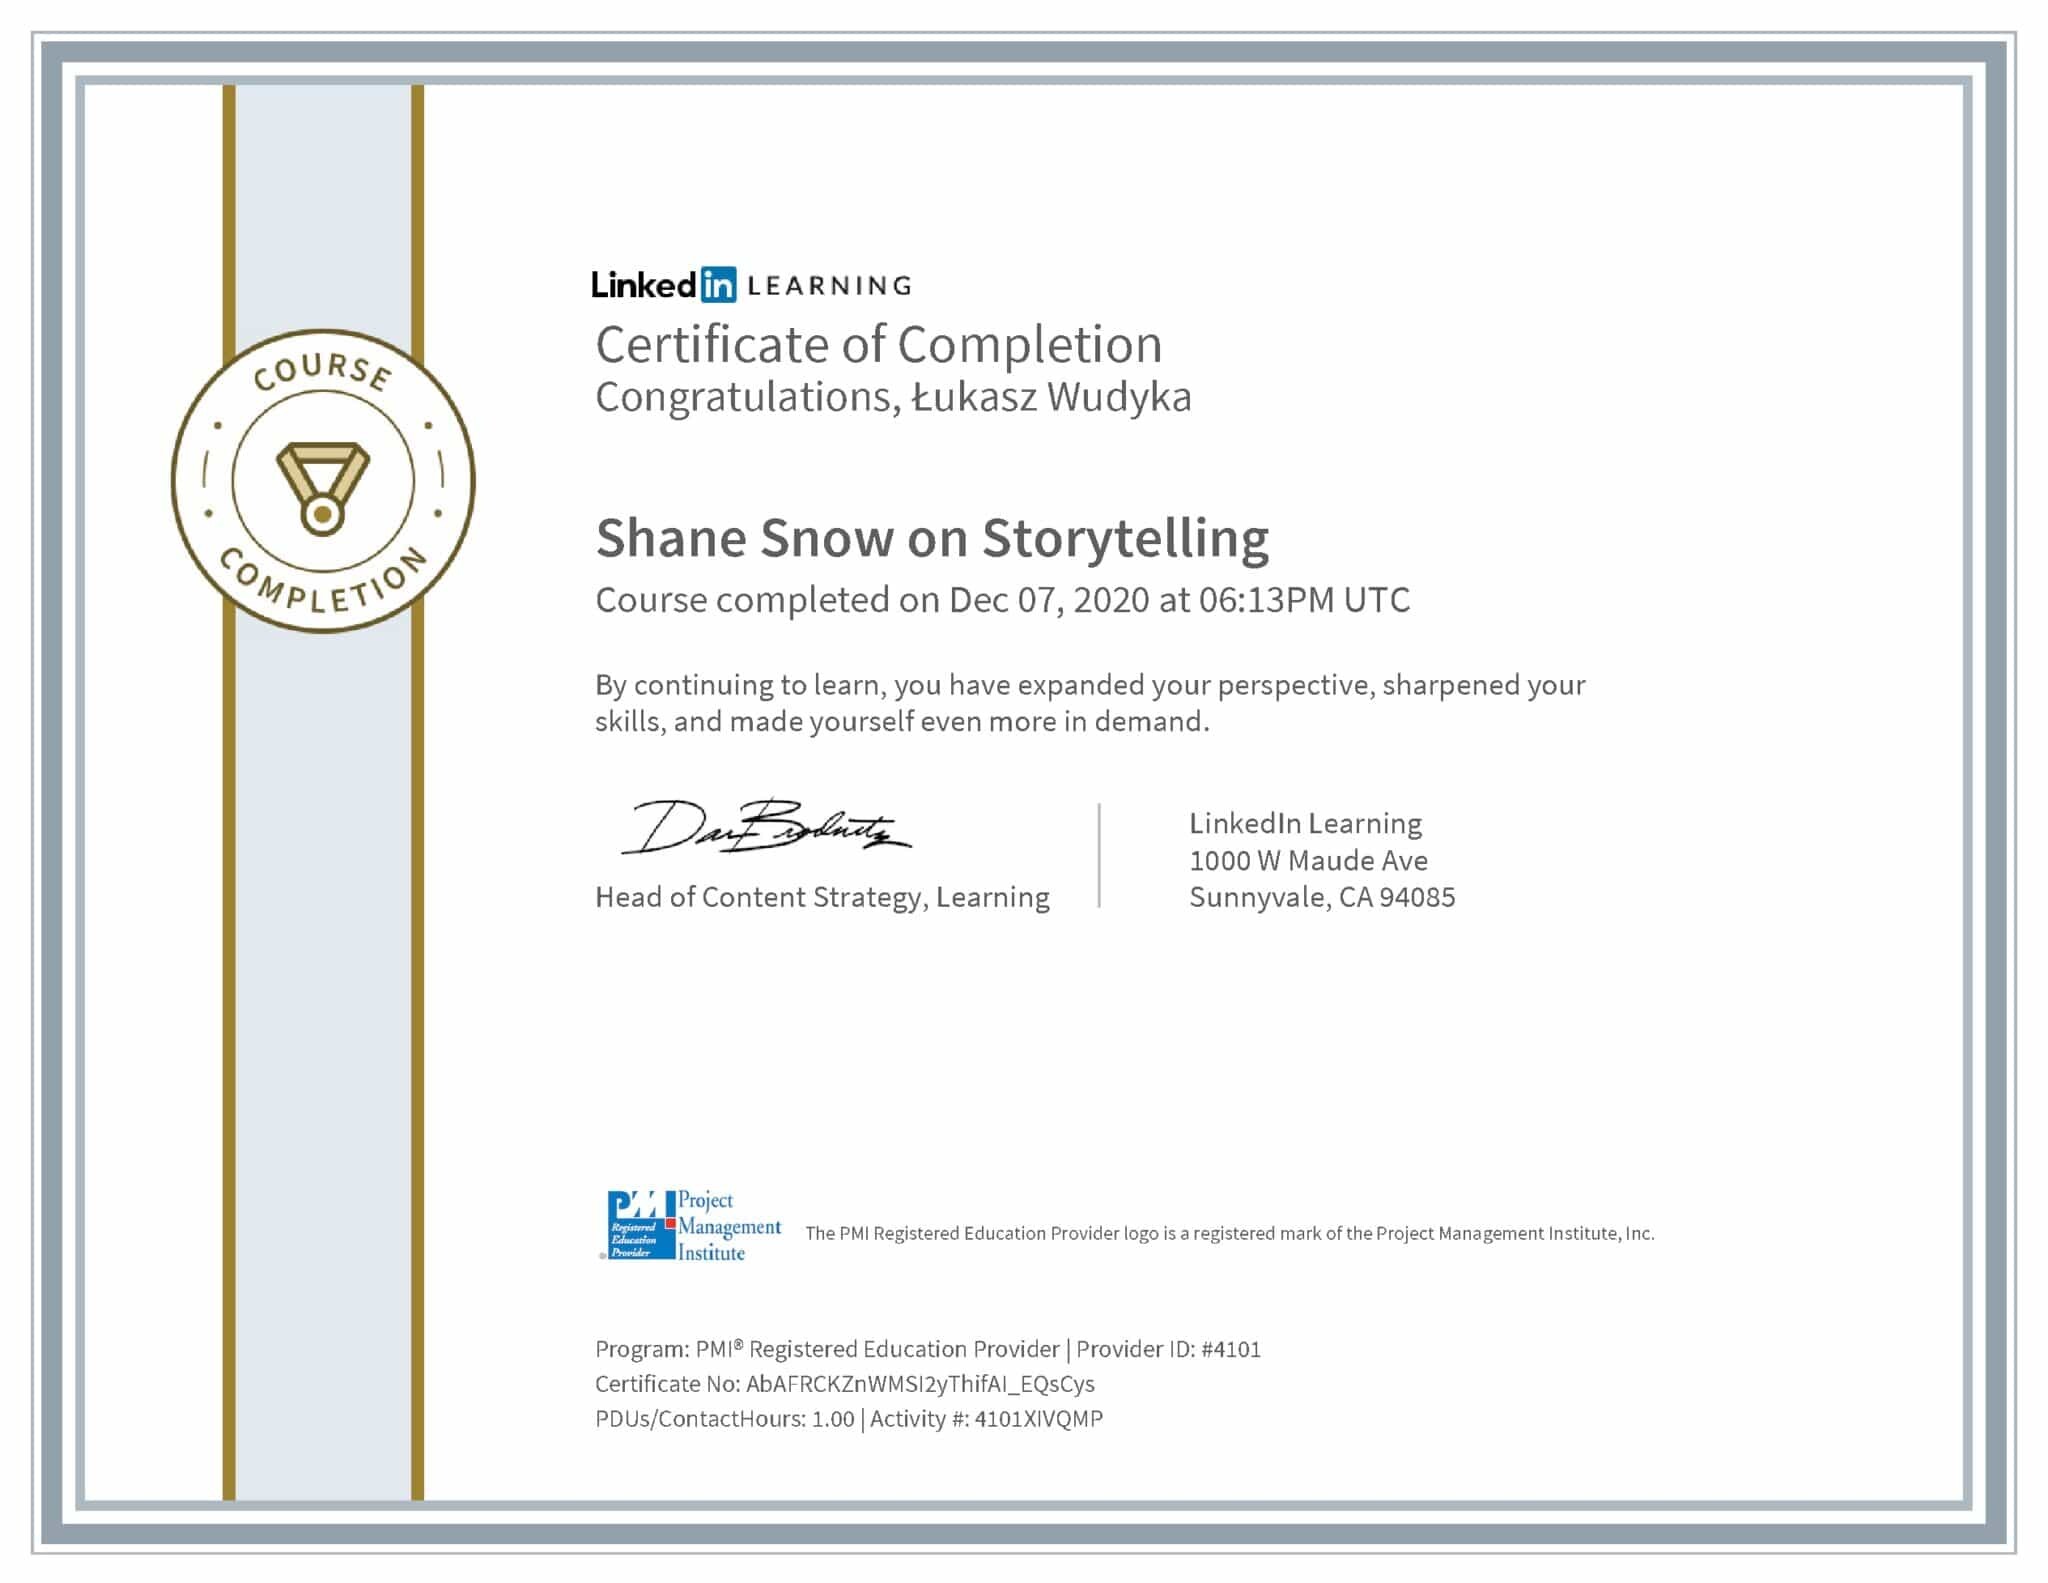 Łukasz Wudyka certyfikat LinkedIn Shane Snow on Storytelling PMI